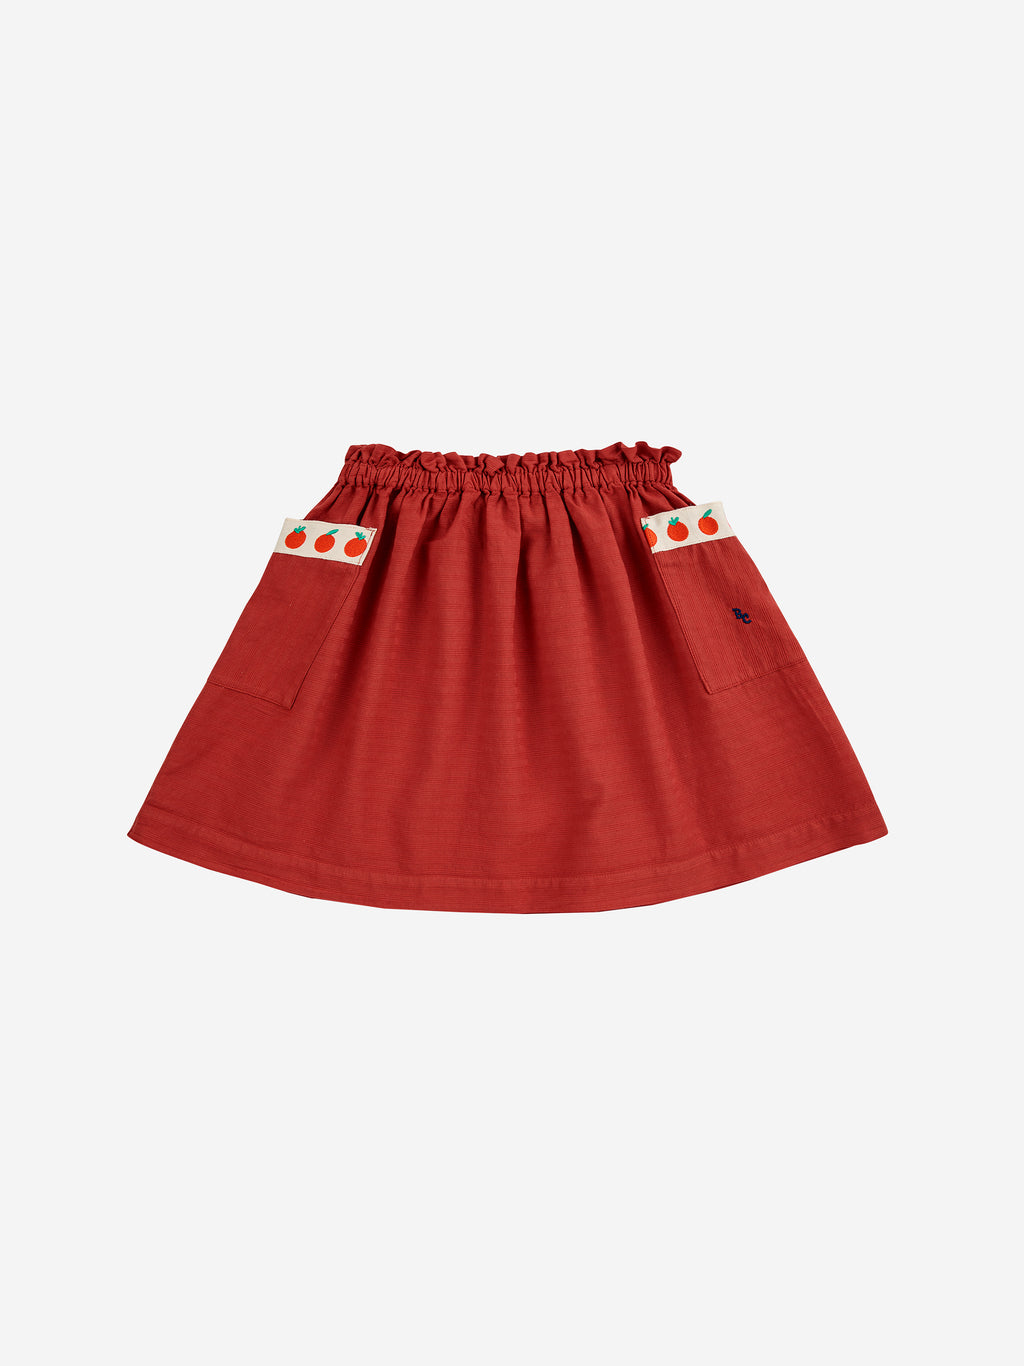 Bobo Choses Pockets Woven Skirt - Burgundy Red